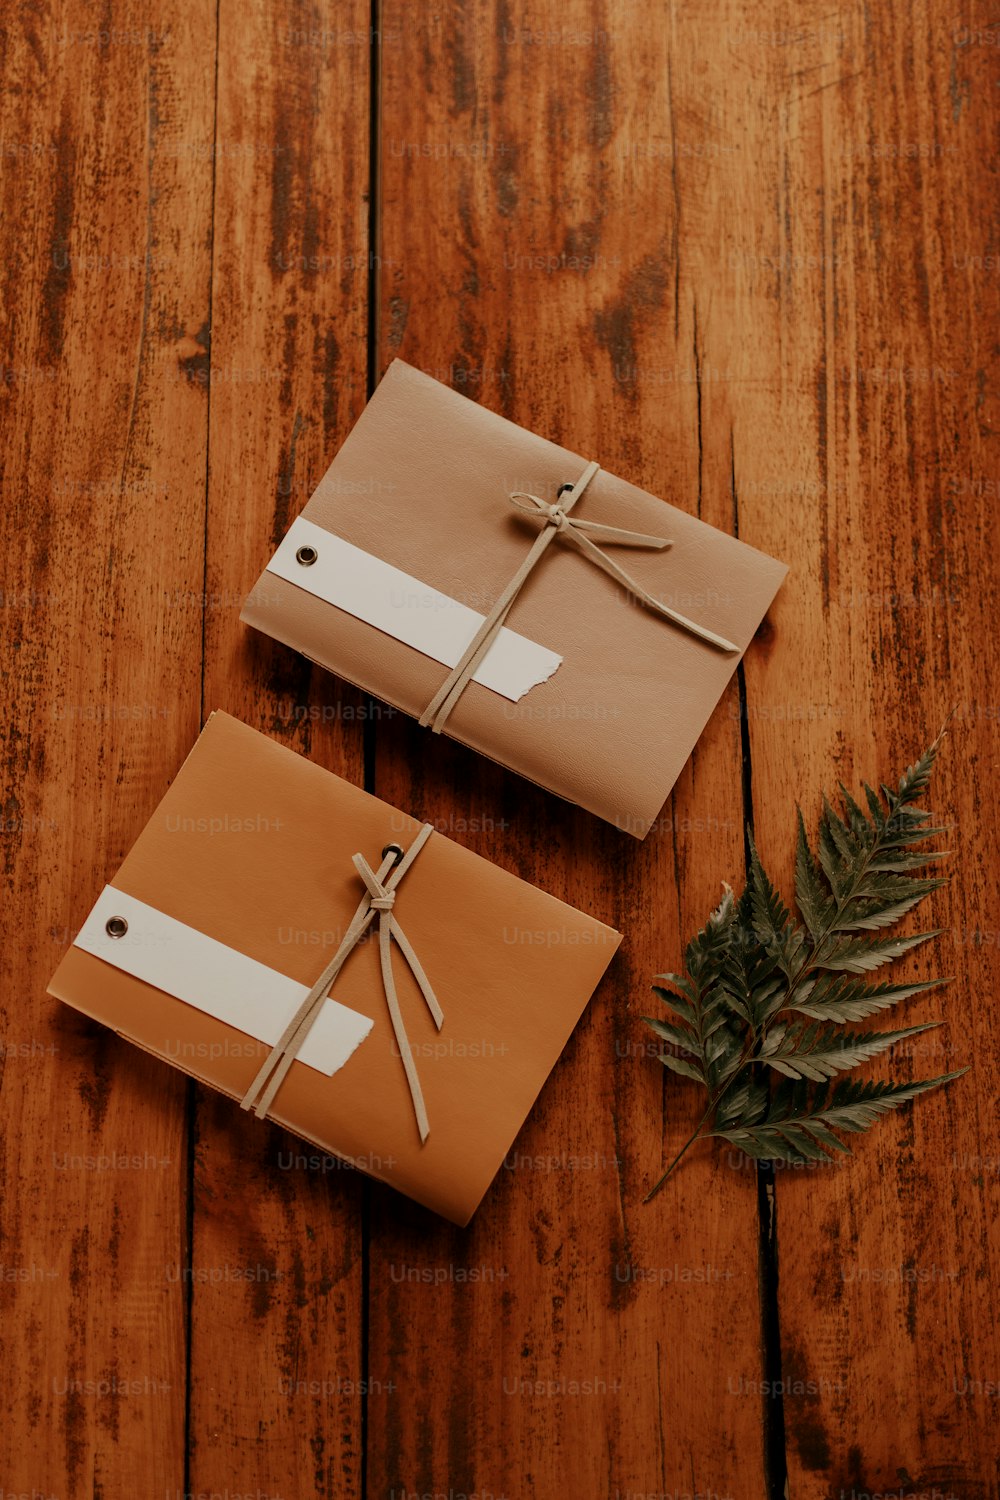 deux cadeaux emballés sur une table en bois avec une plante